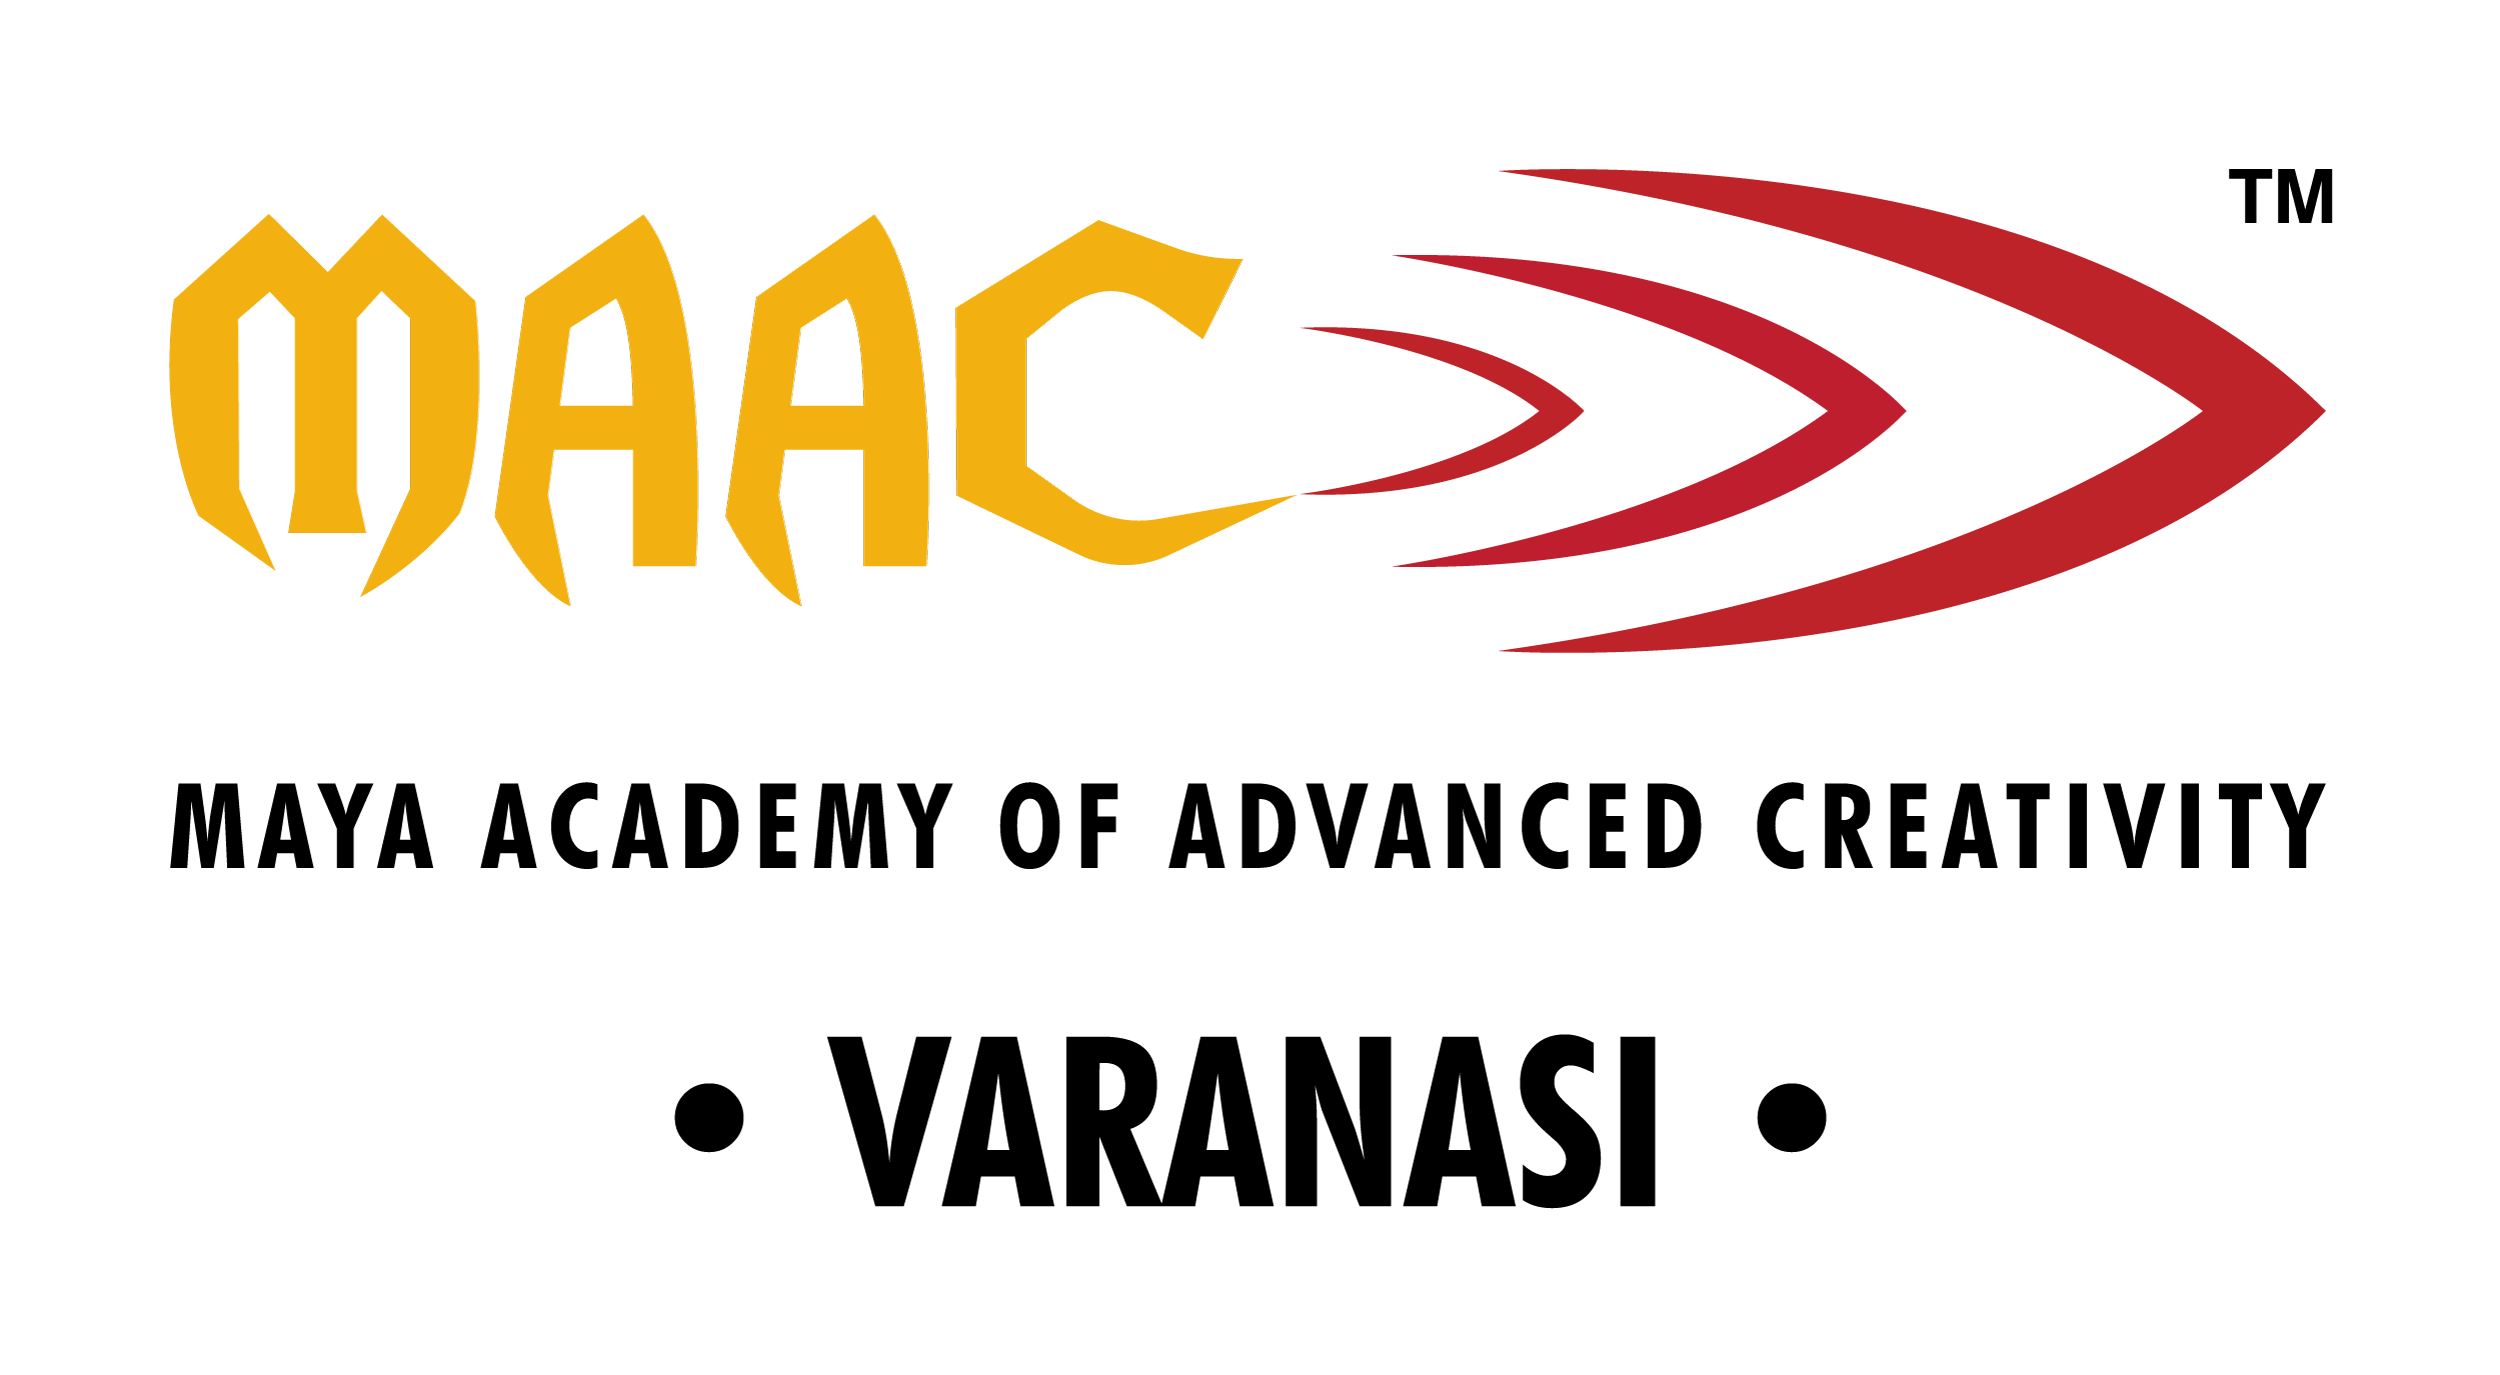 Logos - MAAC